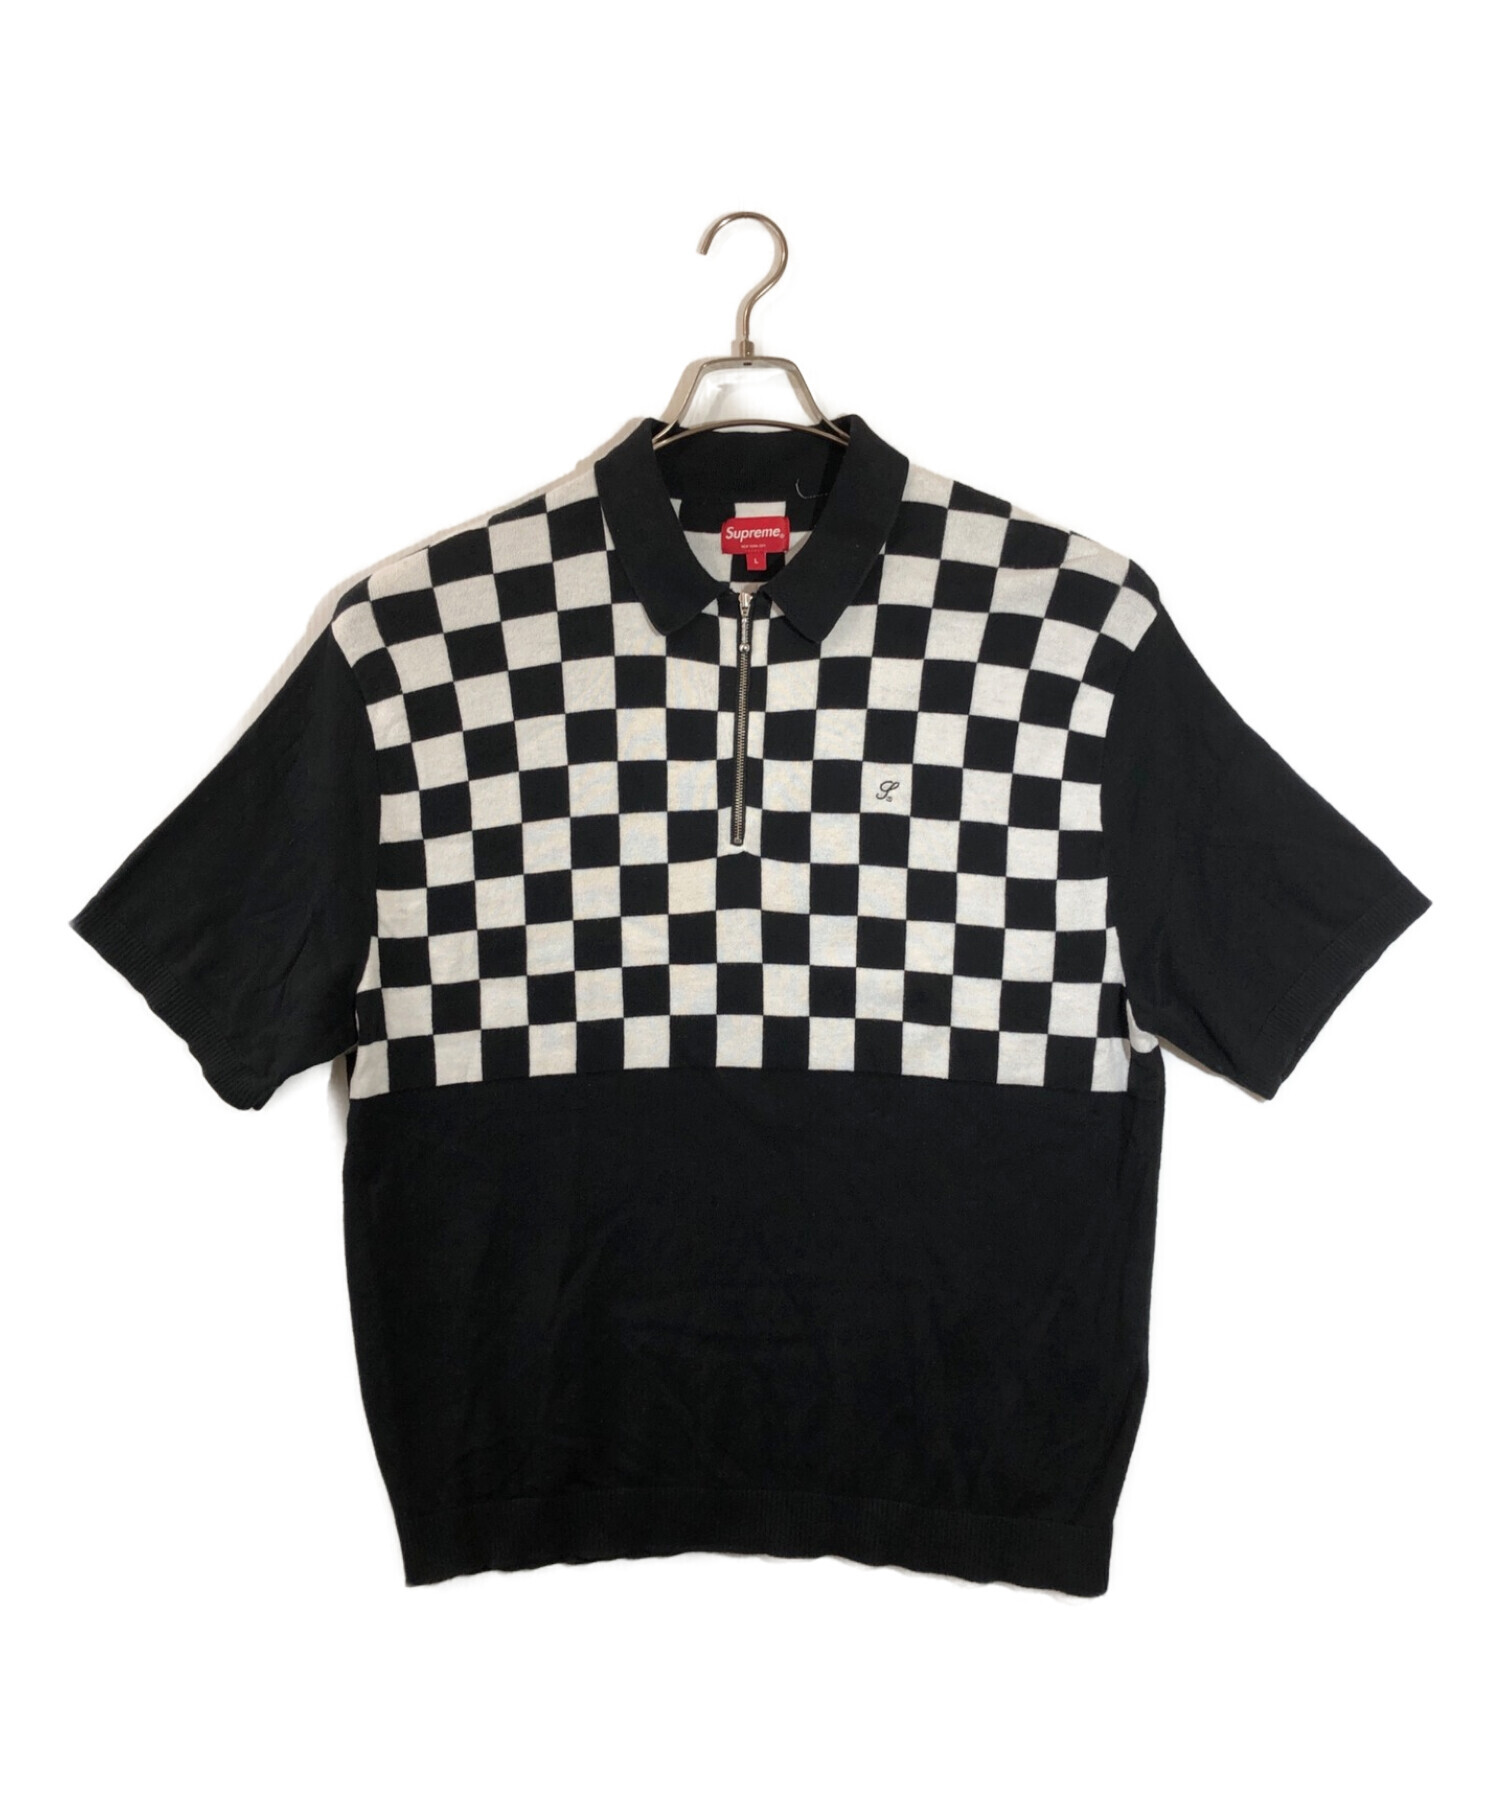 L)Supreme Checkerboard Zip Poloポロシャツ - ポロシャツ